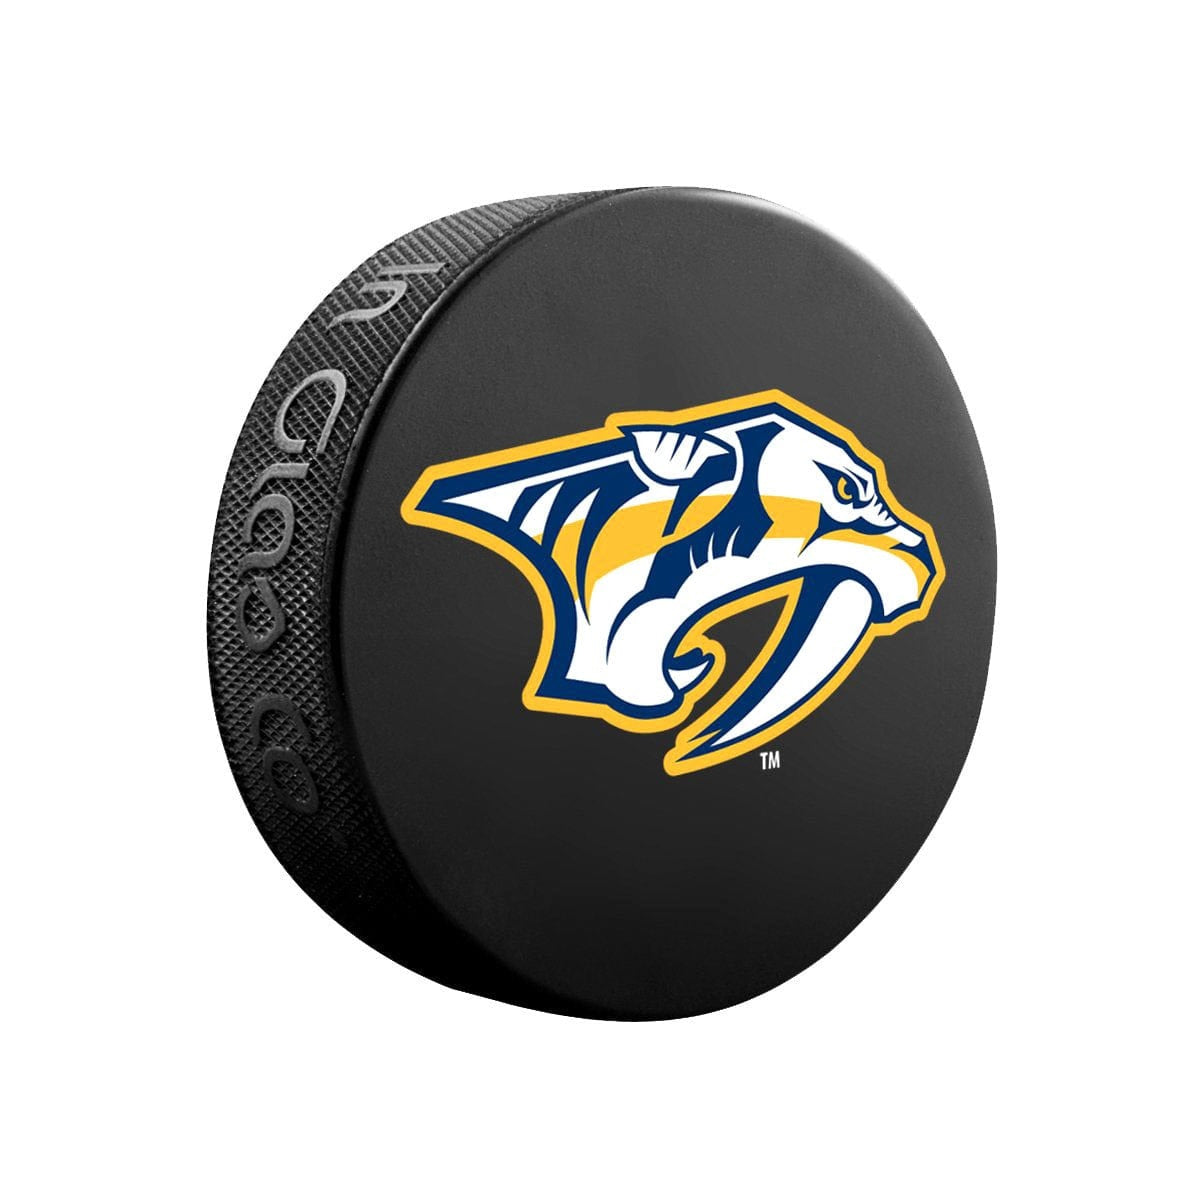 Nashville Predators Inglasco NHL Basic Logo Hockey Puck - The Hockey Shop Source For Sports